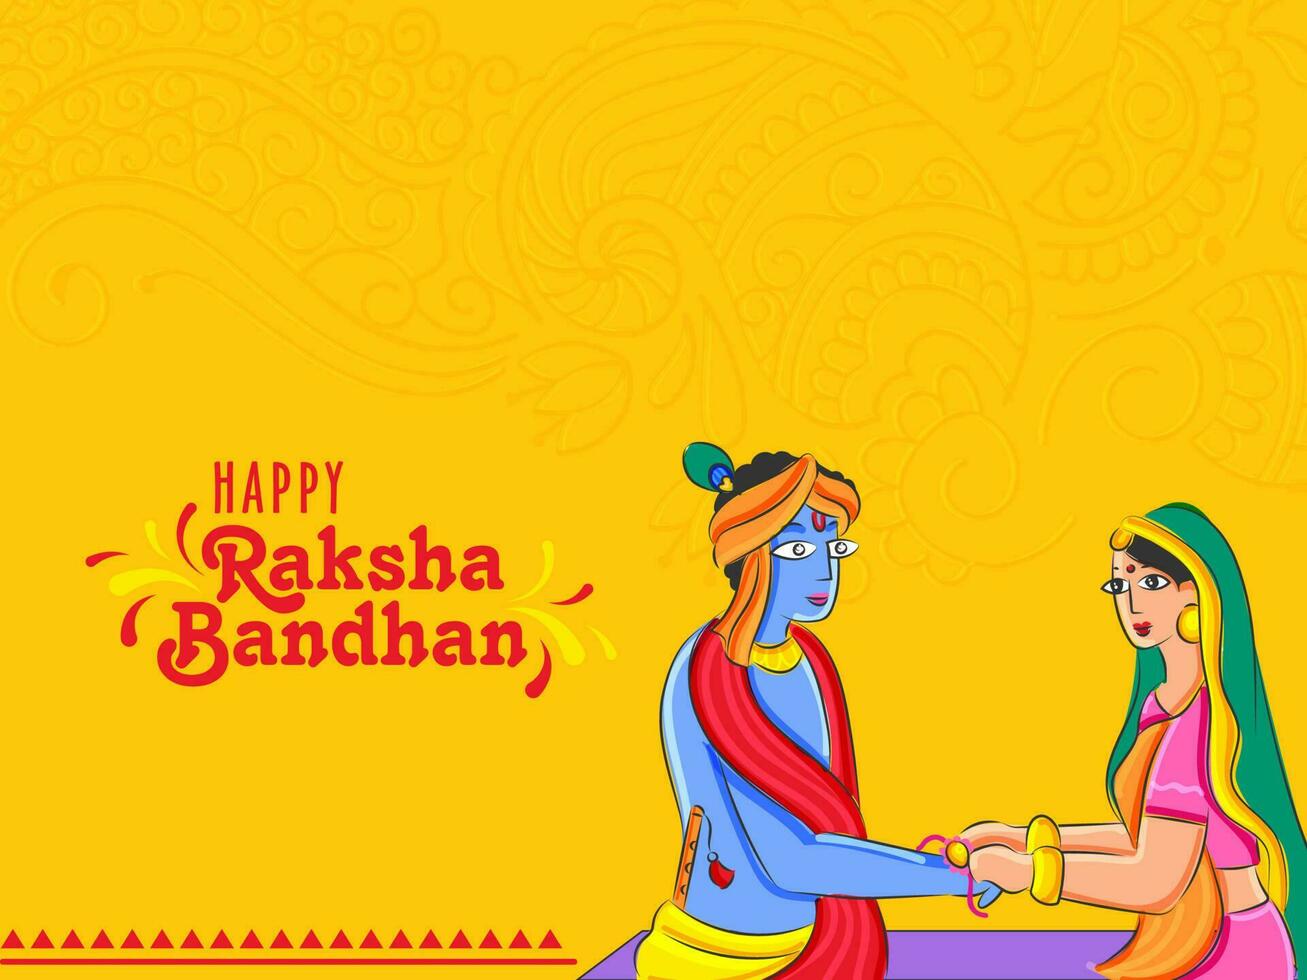 glücklich Raksha Bandhan Feier Konzept mit Illustration von indisch Frau oder subhadra binden Rakhi zu Herr krishna auf Chrom Gelb Paisley Muster Hintergrund. vektor